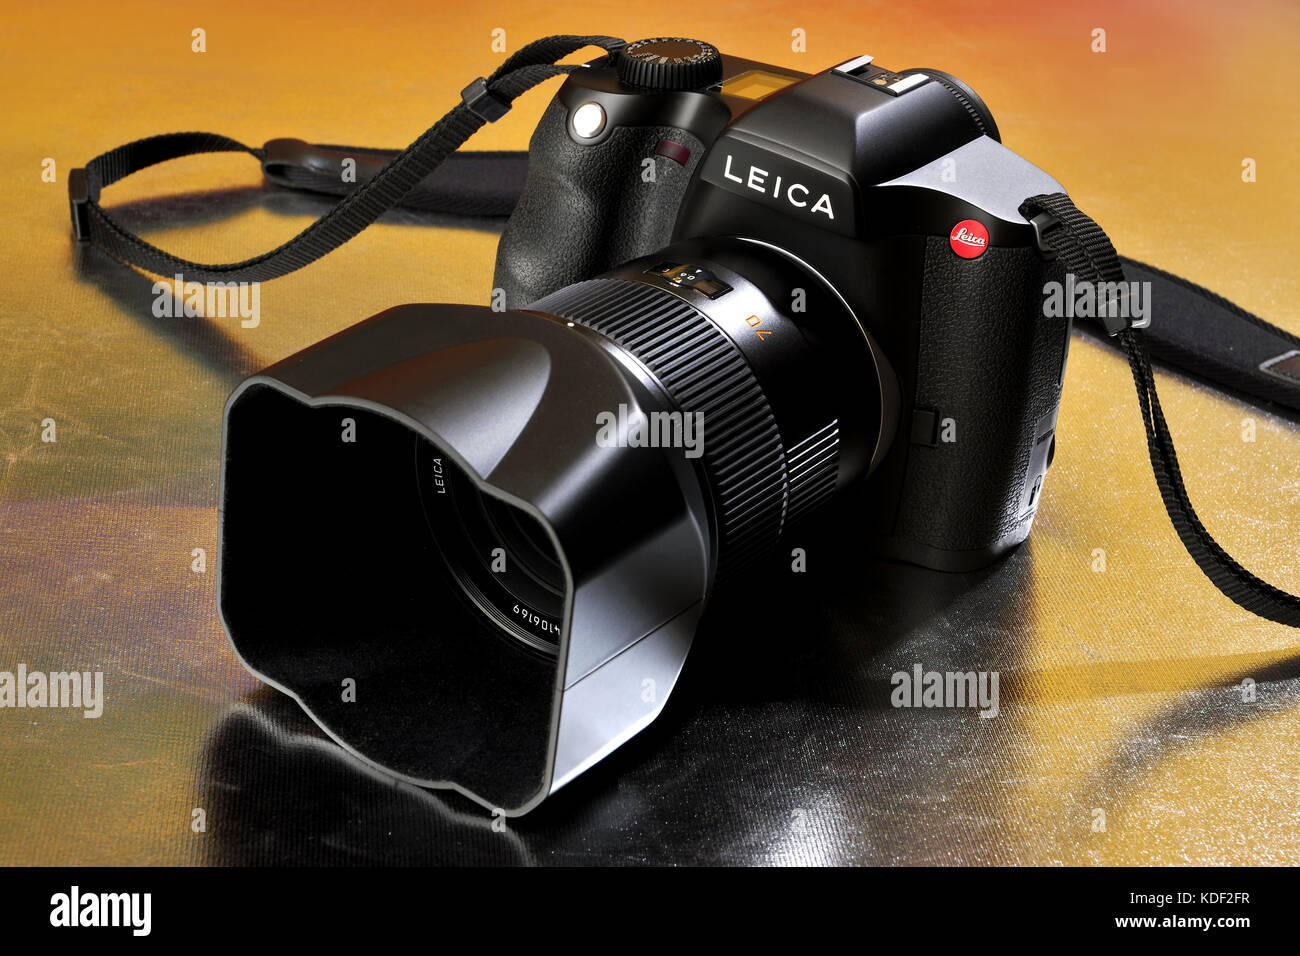 Kamera, Leica, Qualität, Fotografie, Stockfoto